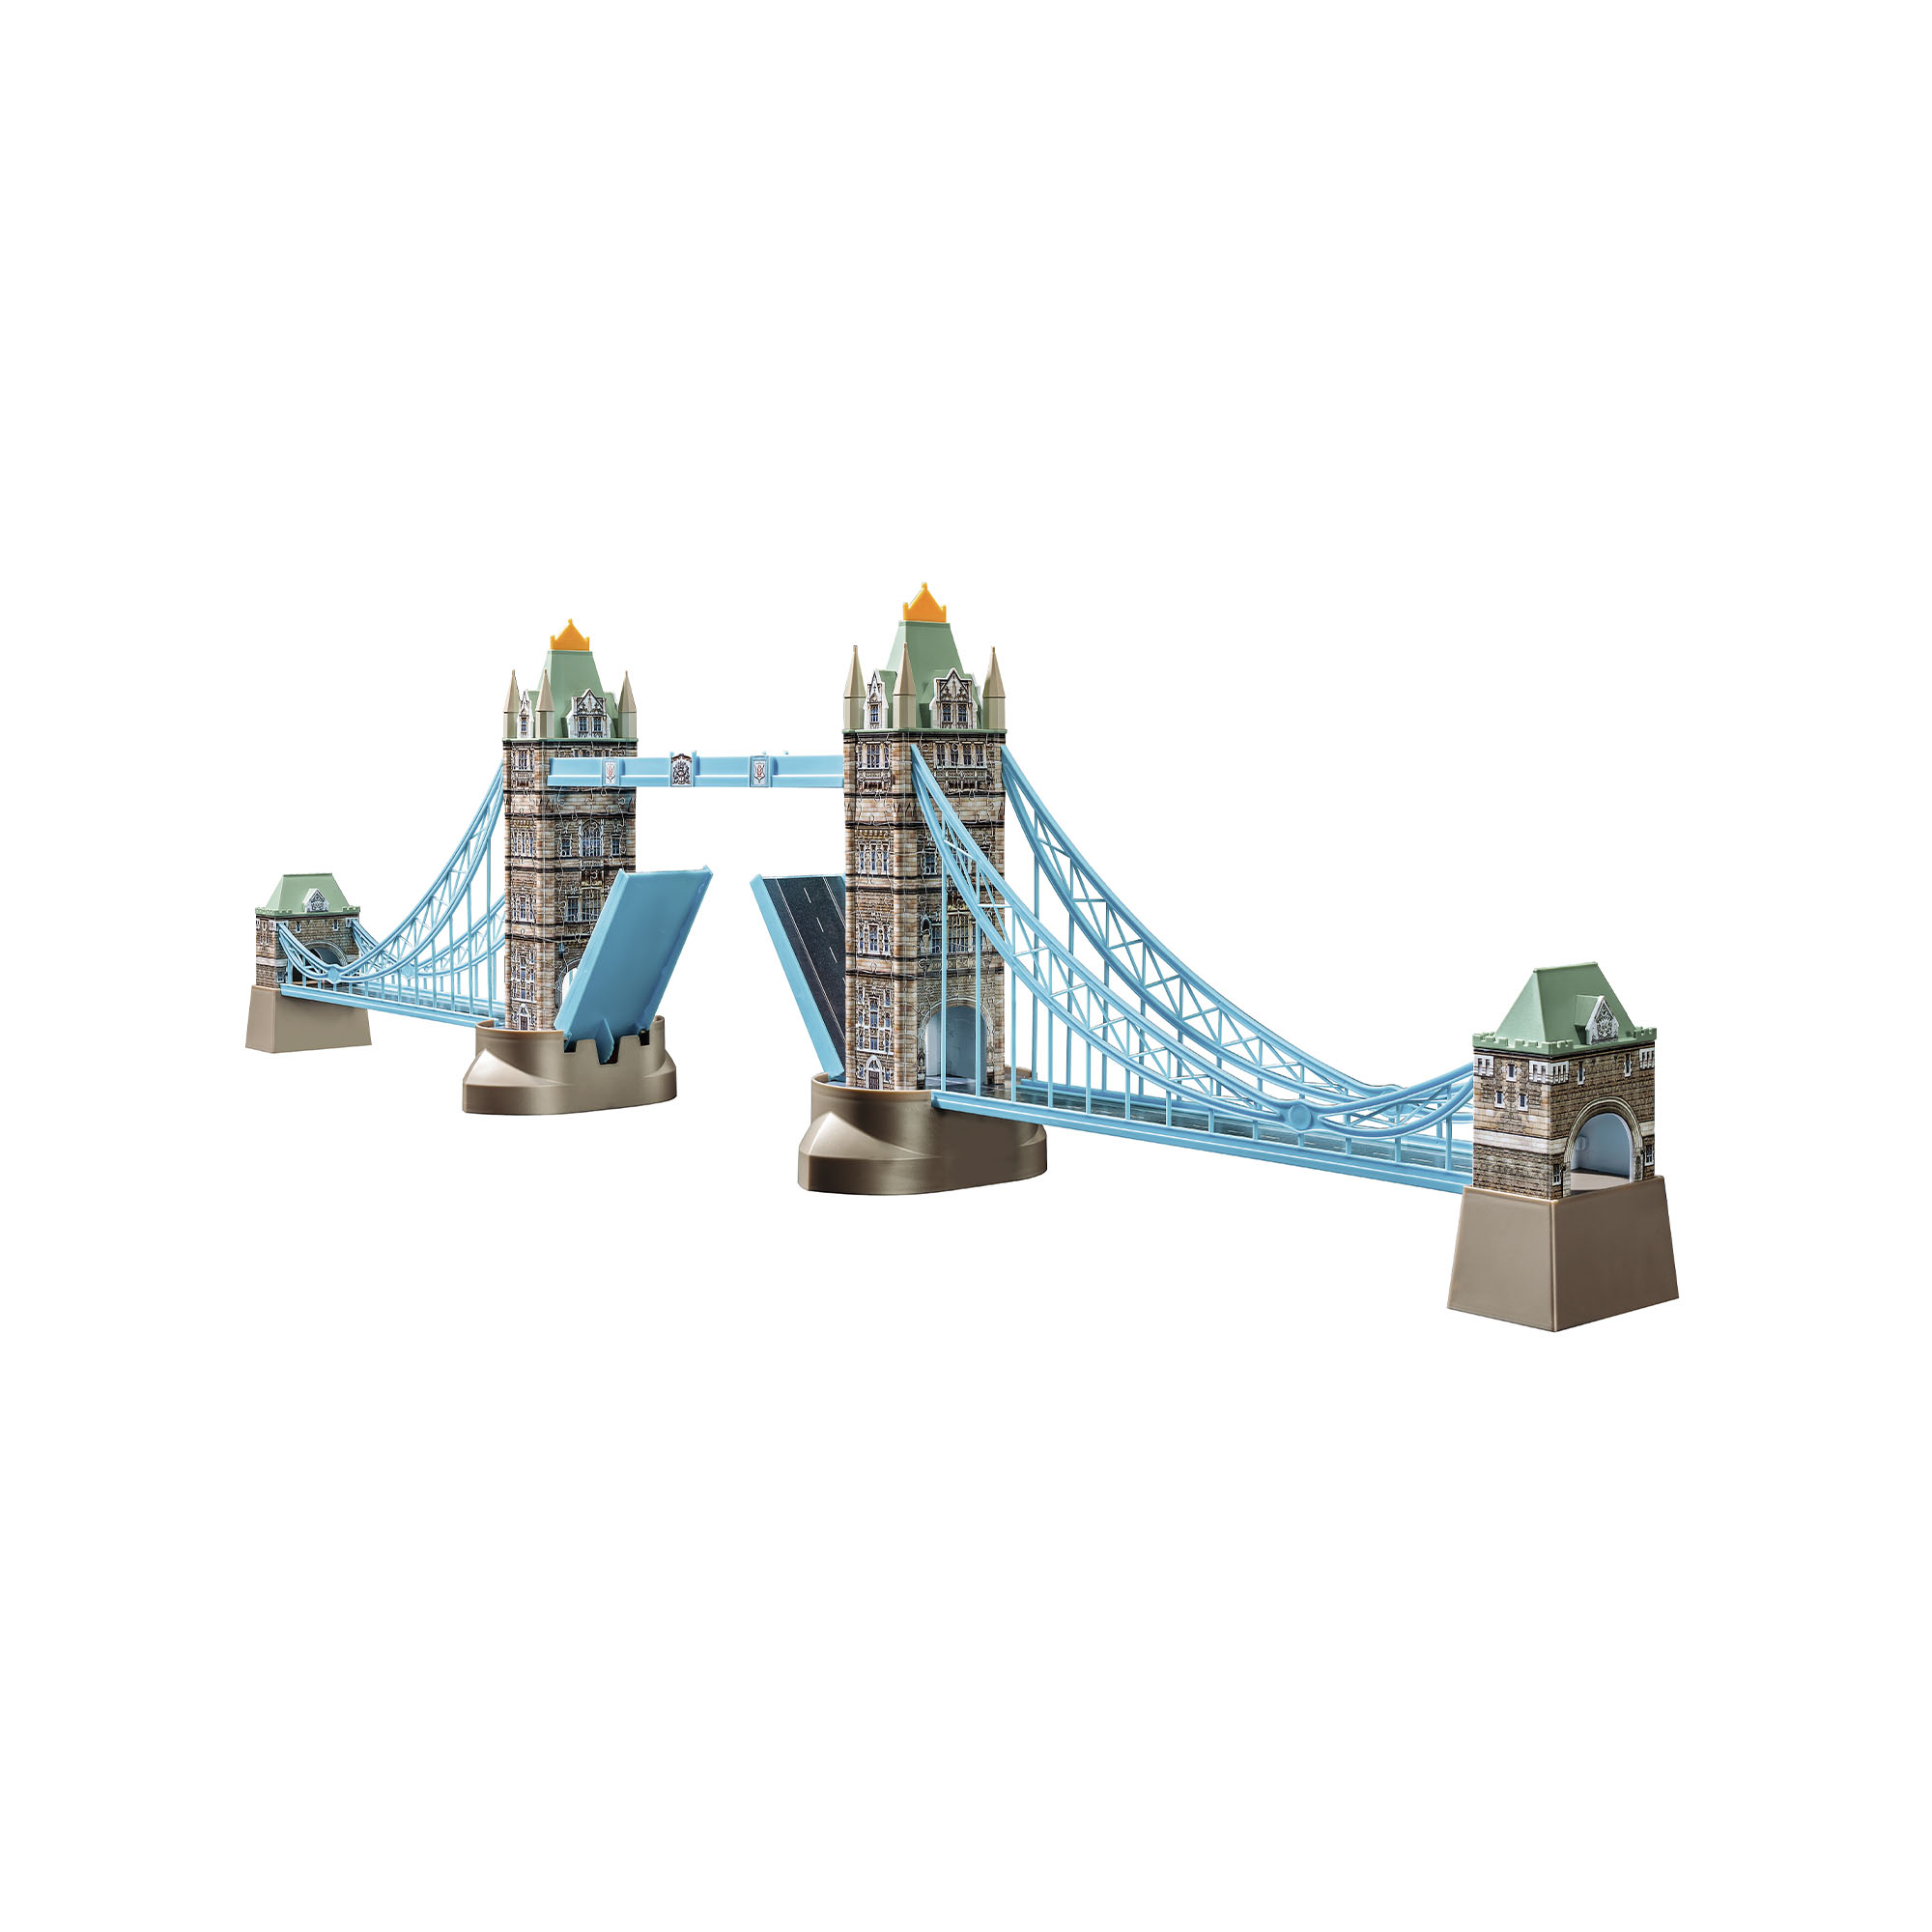 Ravensburger Puzzle 3D Building Maxi 12559 - Tower Bridge, , large